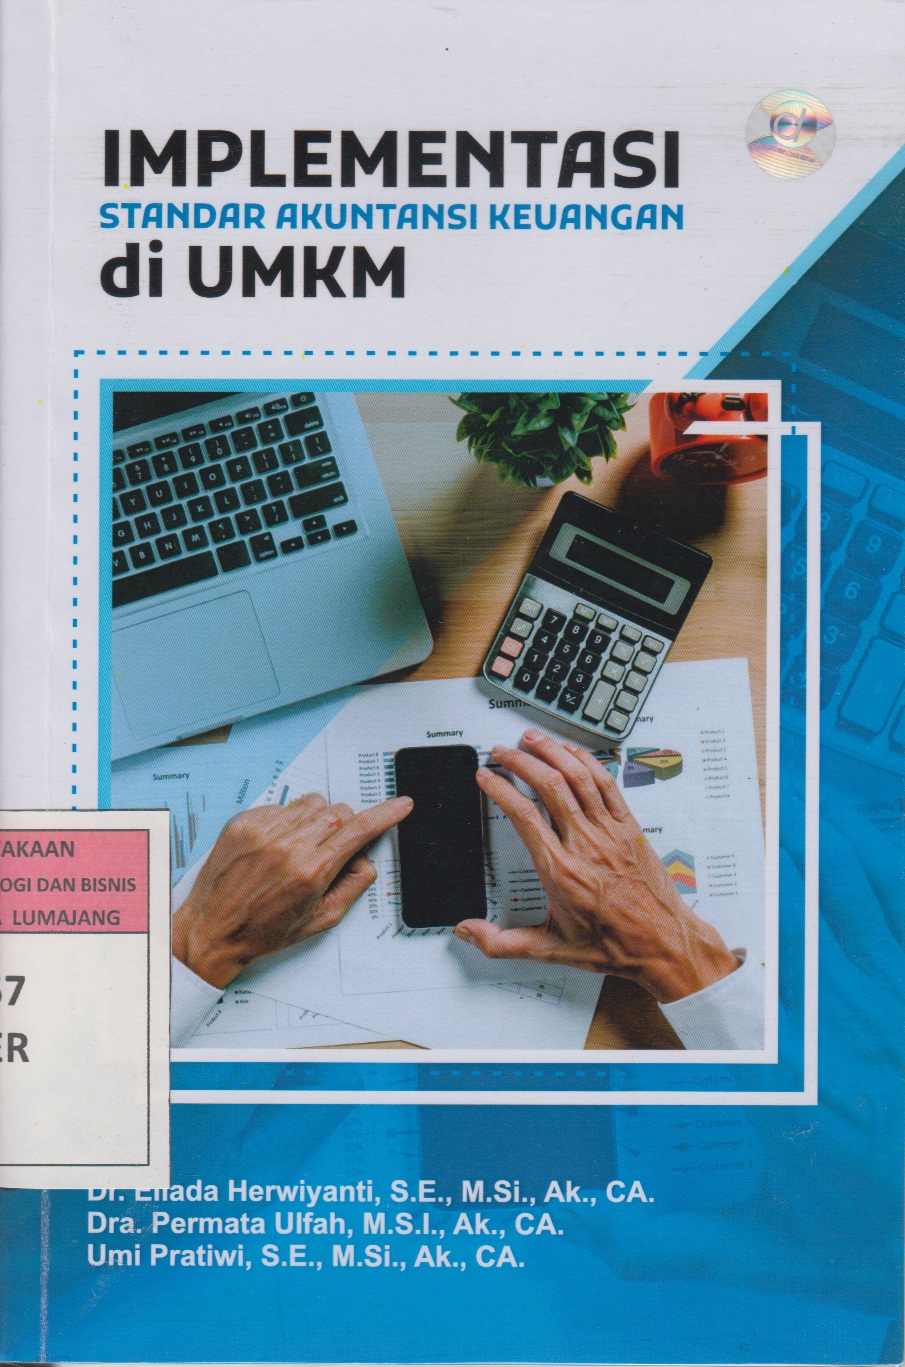 Implementasi standar akuntansi keuangan di UMKM